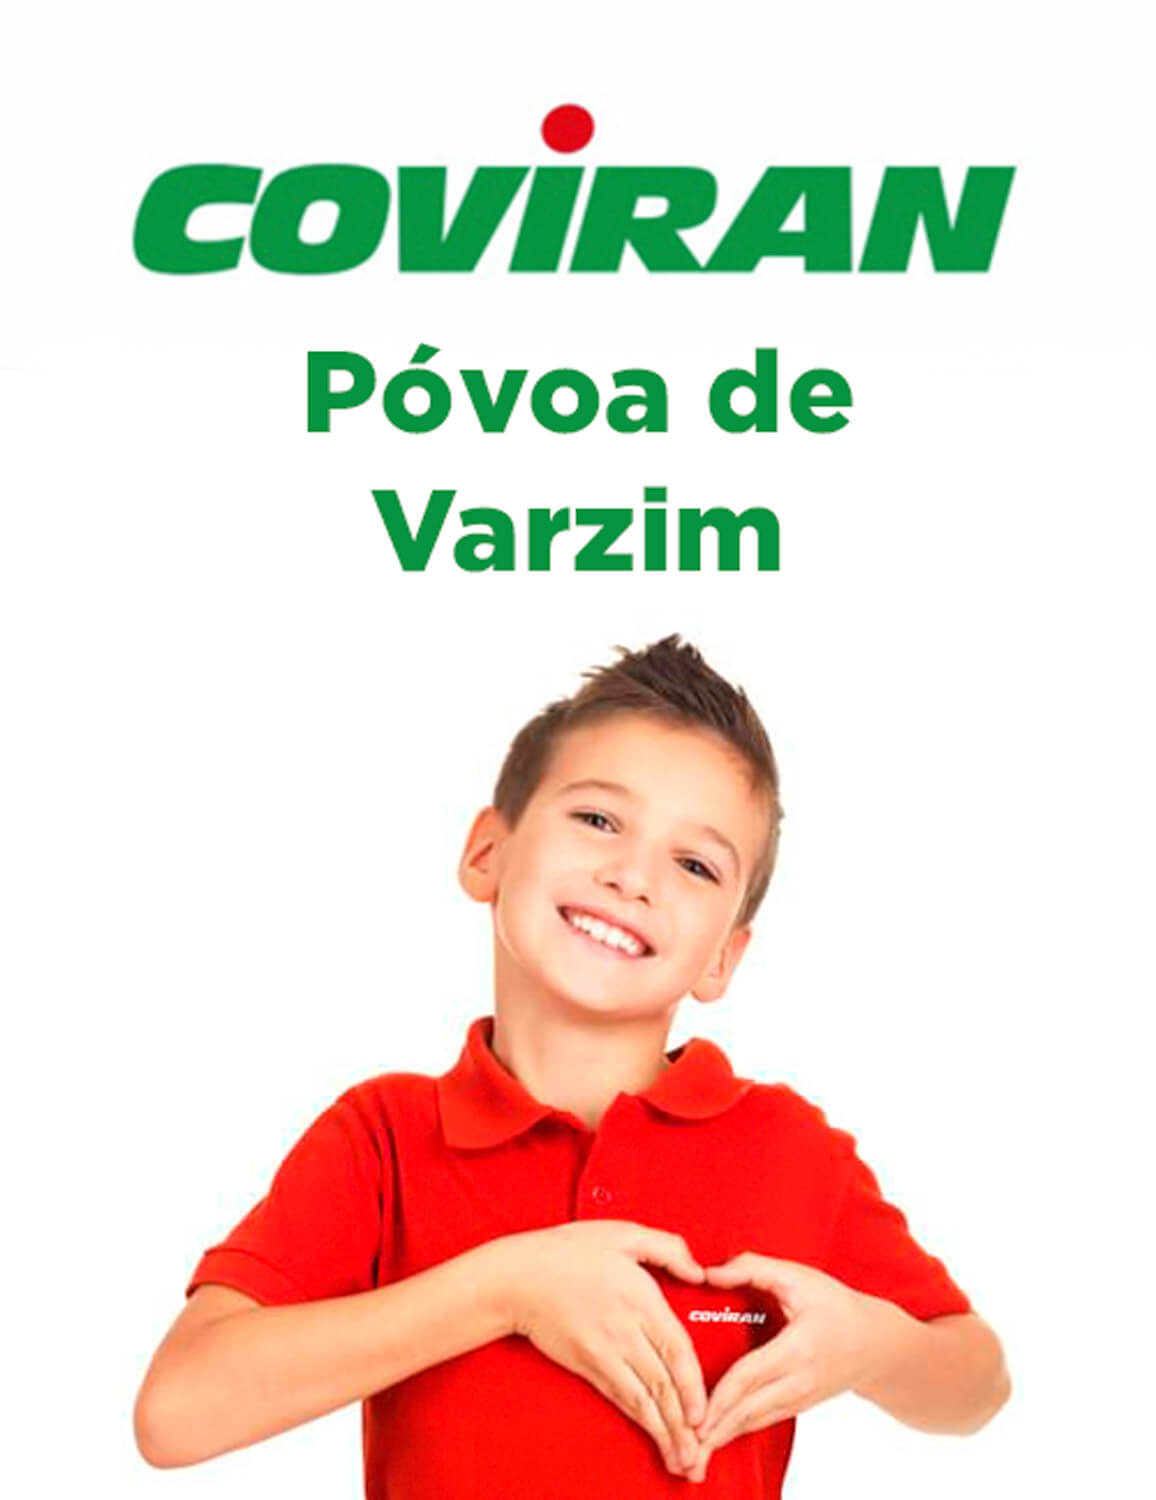 Logo Conivan